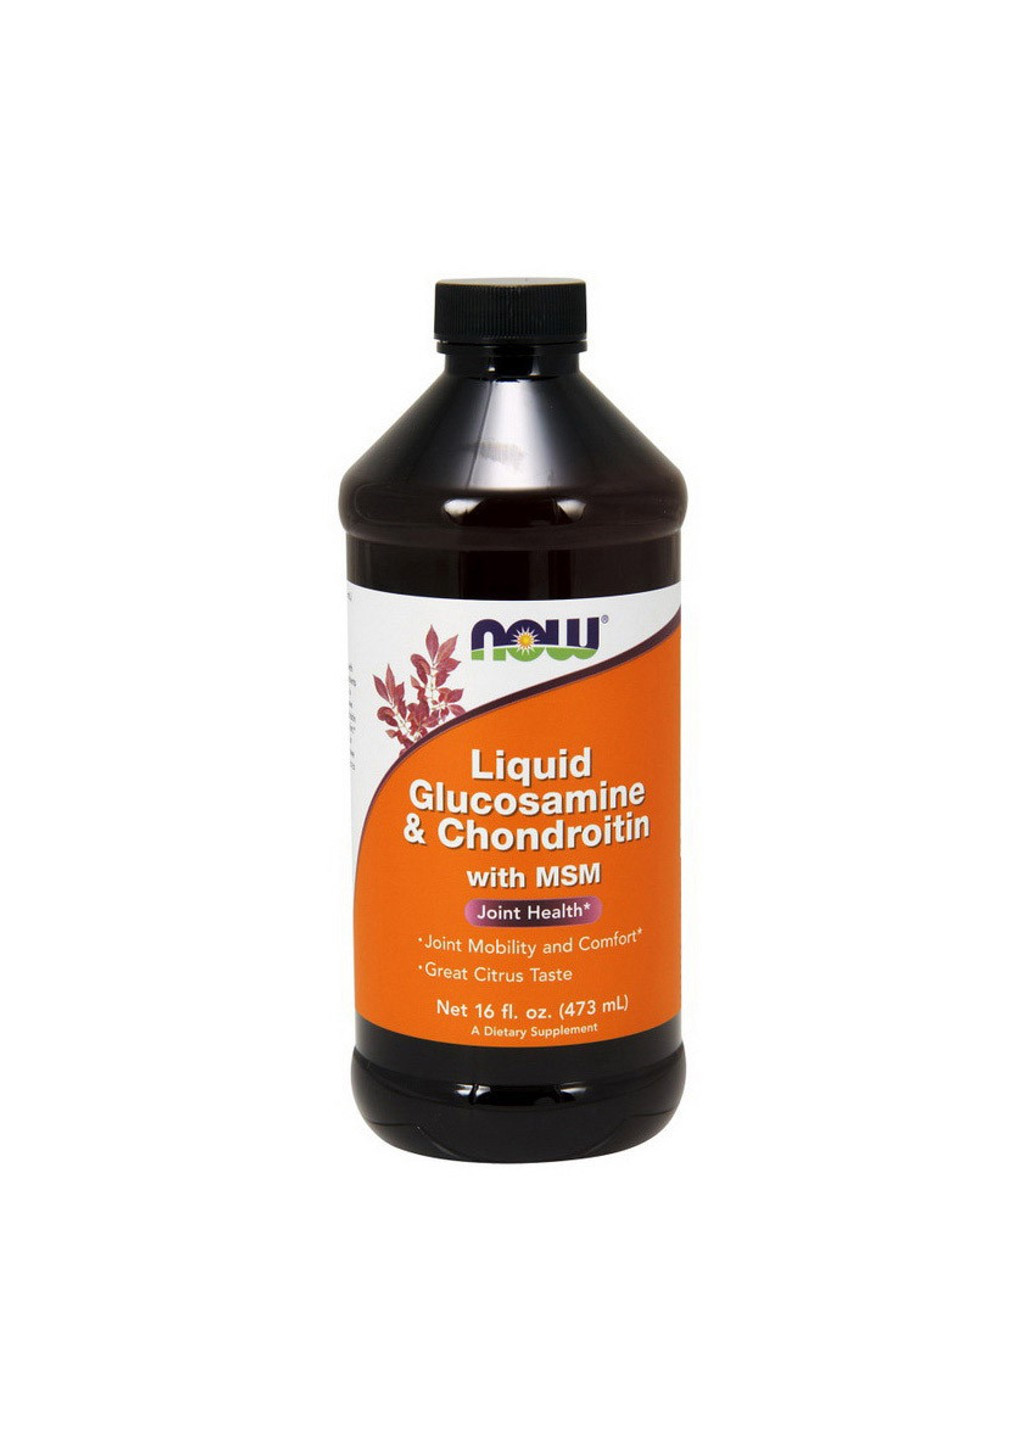 Глюкозамин хондроитин МСМ Liquid Glucosamine & Chondroitin with MSM (473 ml) нау фудс Now Foods (255409791)